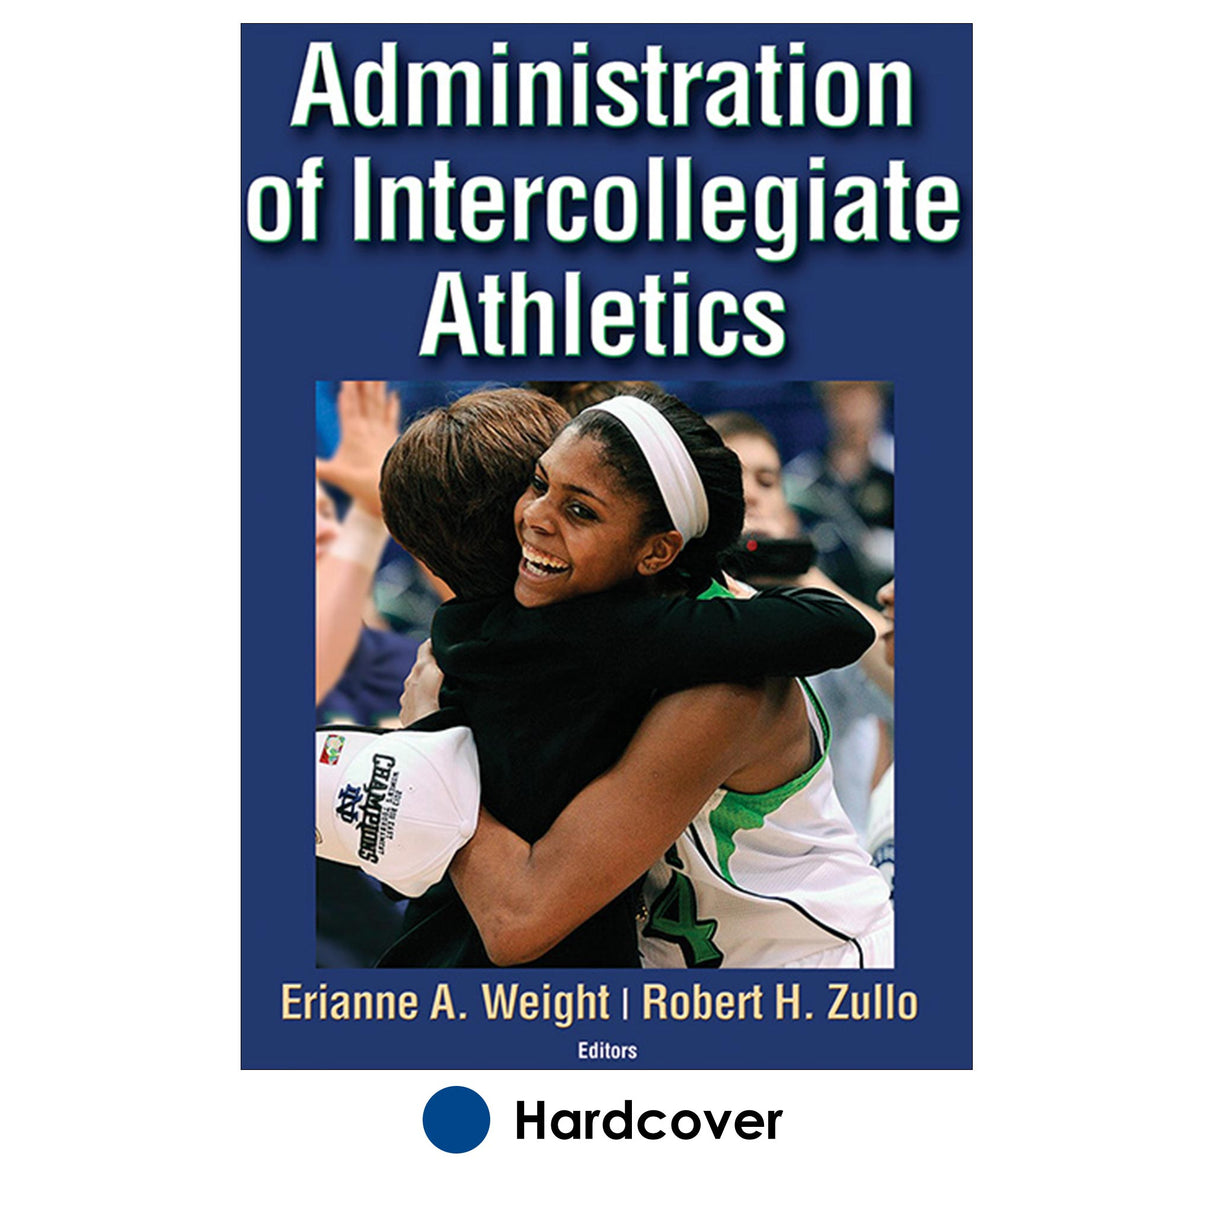 Administration of Intercollegiate Athletics